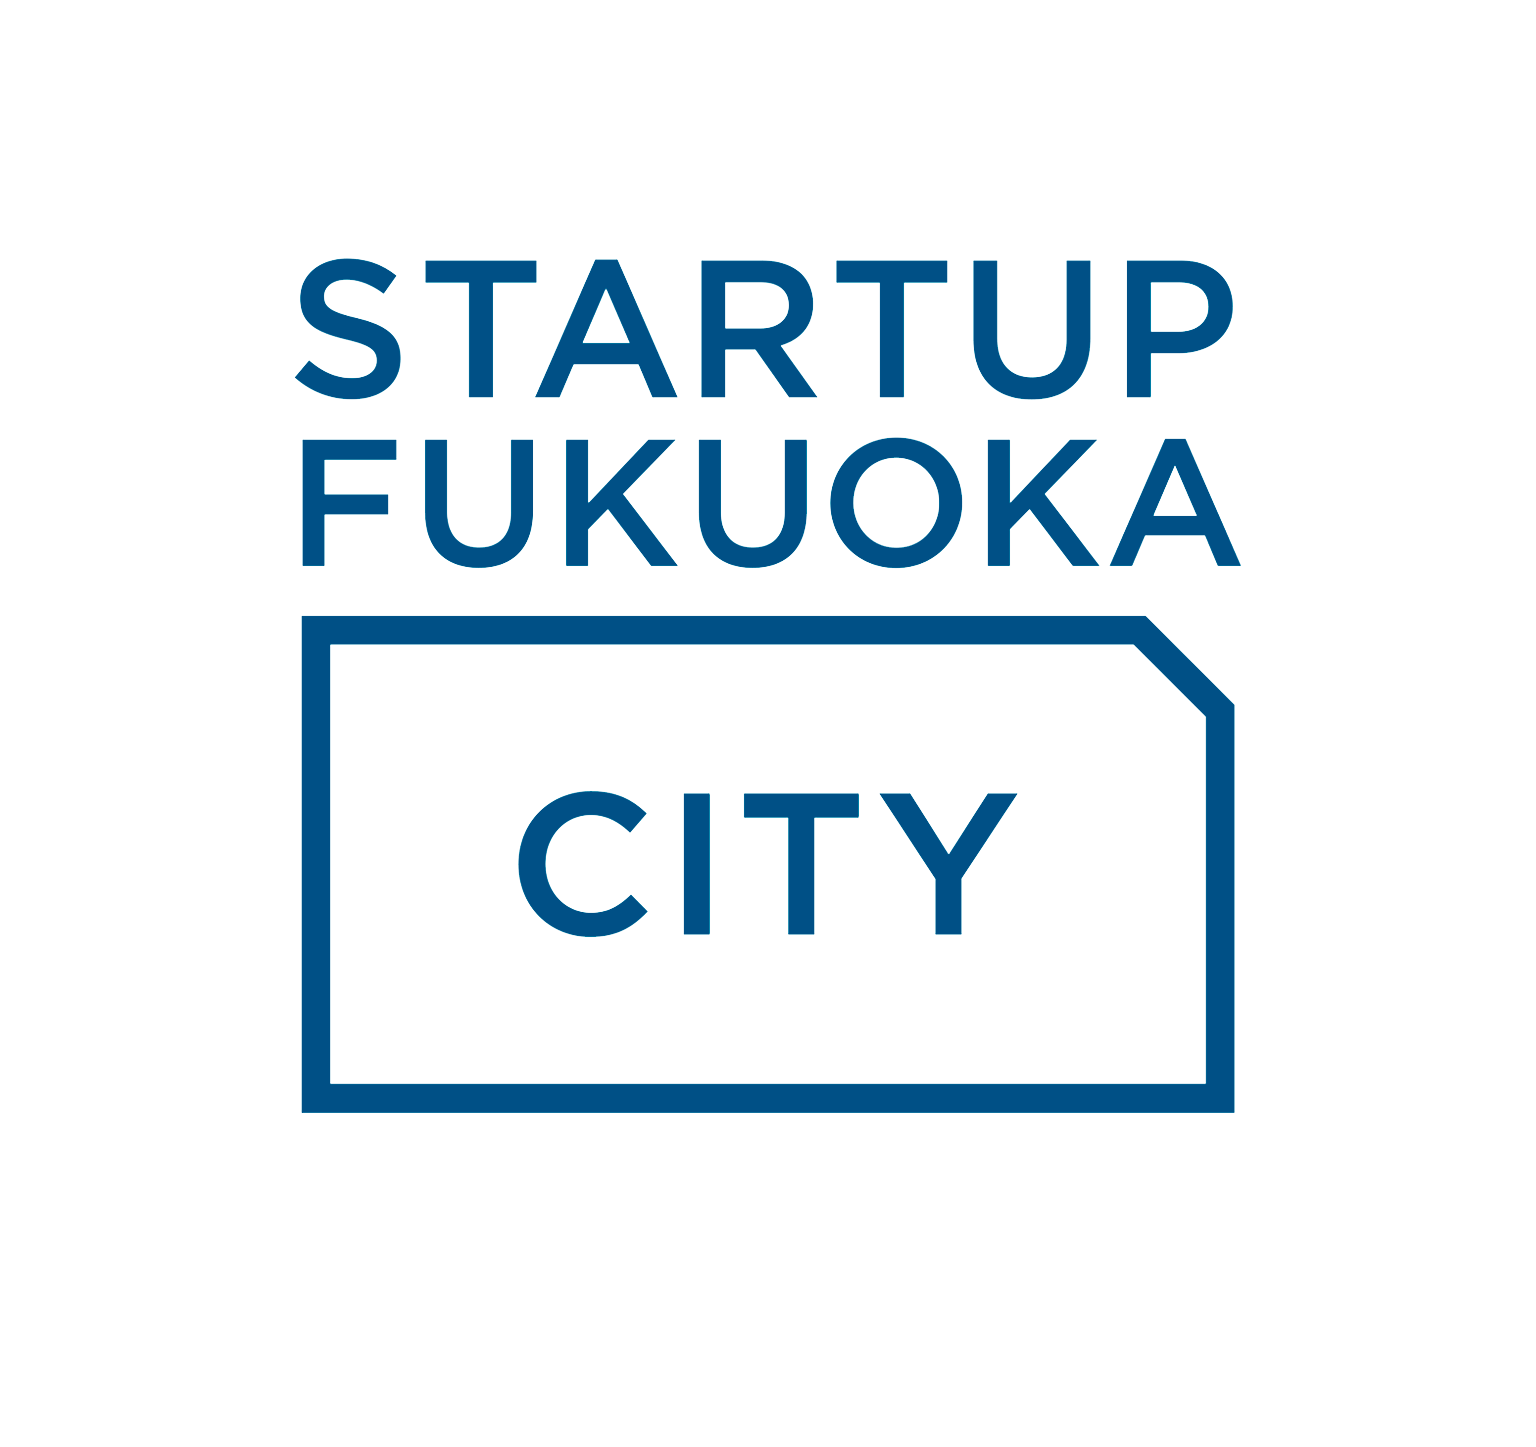 Startup Fukuoka City Logo